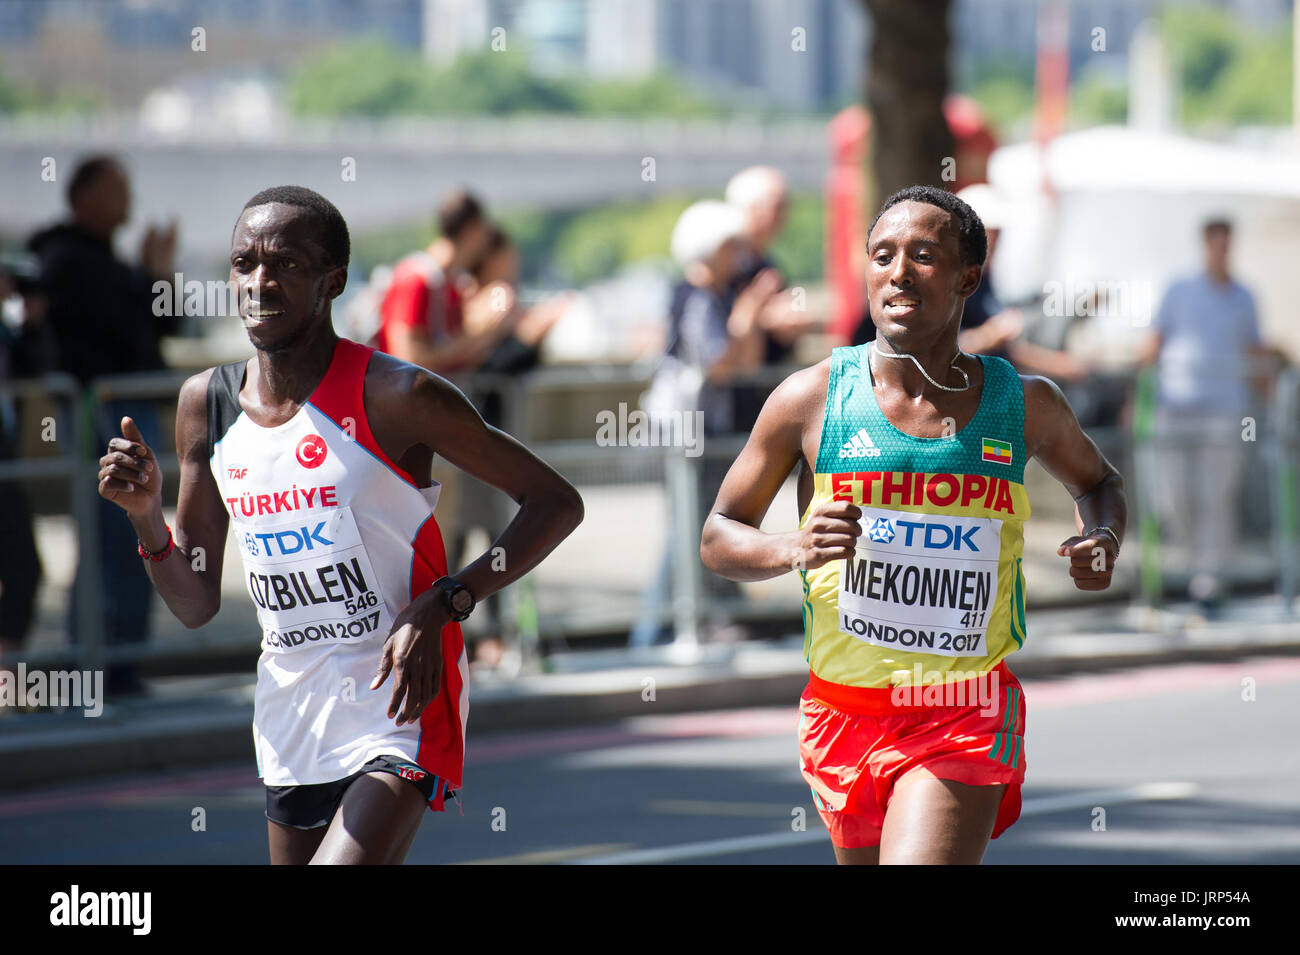 Londres, Royaume-Uni. 6 Août, 2017. Kaan Kigen Ozbilen (Turquie) et Tsegaye Mekonnen (Éthiopie) à l'IAAF World Athletics Championships Men's Marathon Race Crédit : Phil Swallow Photography/Alamy Live News Banque D'Images